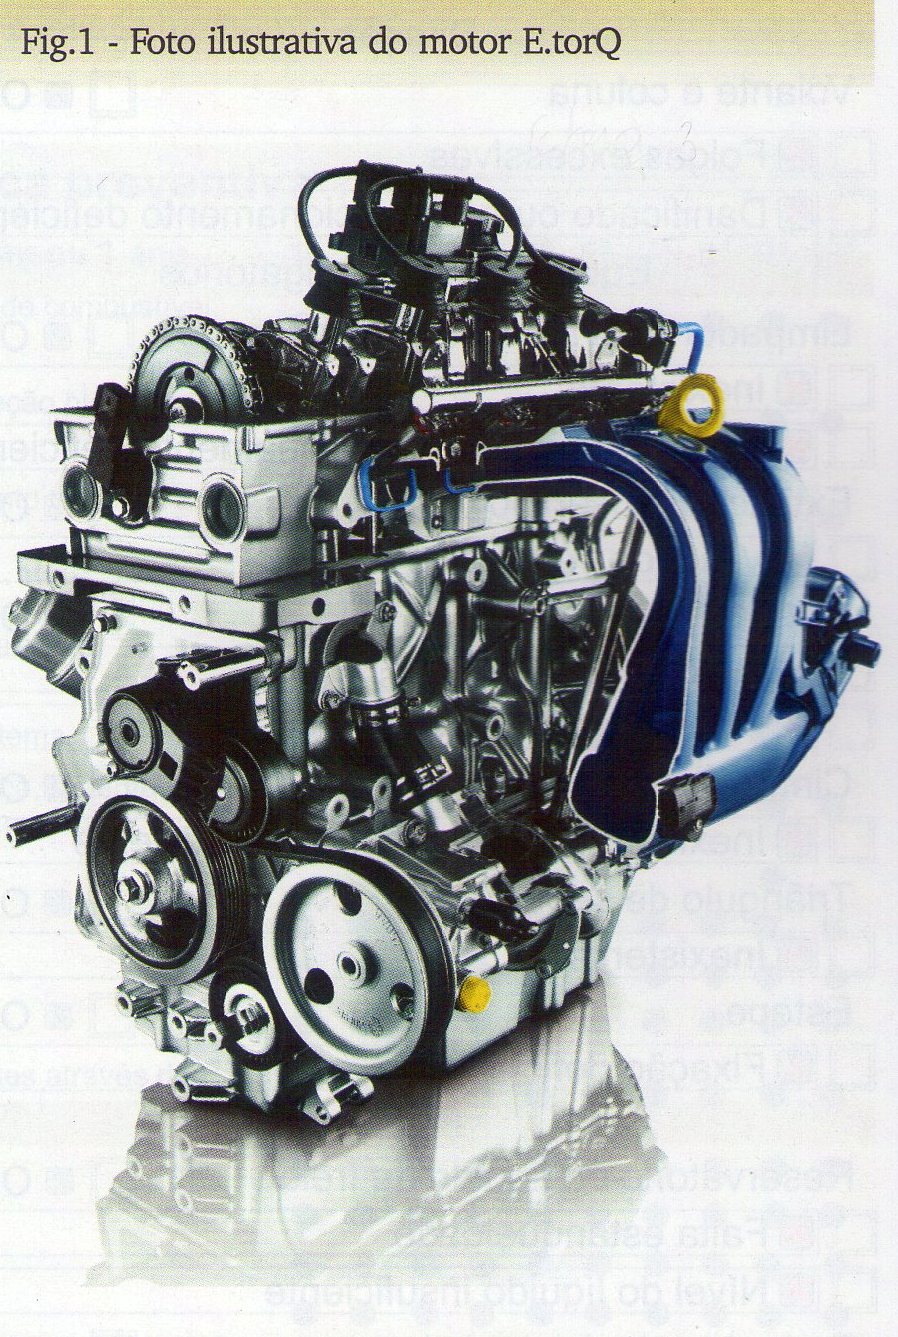 Motor: Manutenção do motor Fiat 1.8 E.Torq EVO (Parte 1) - Revista